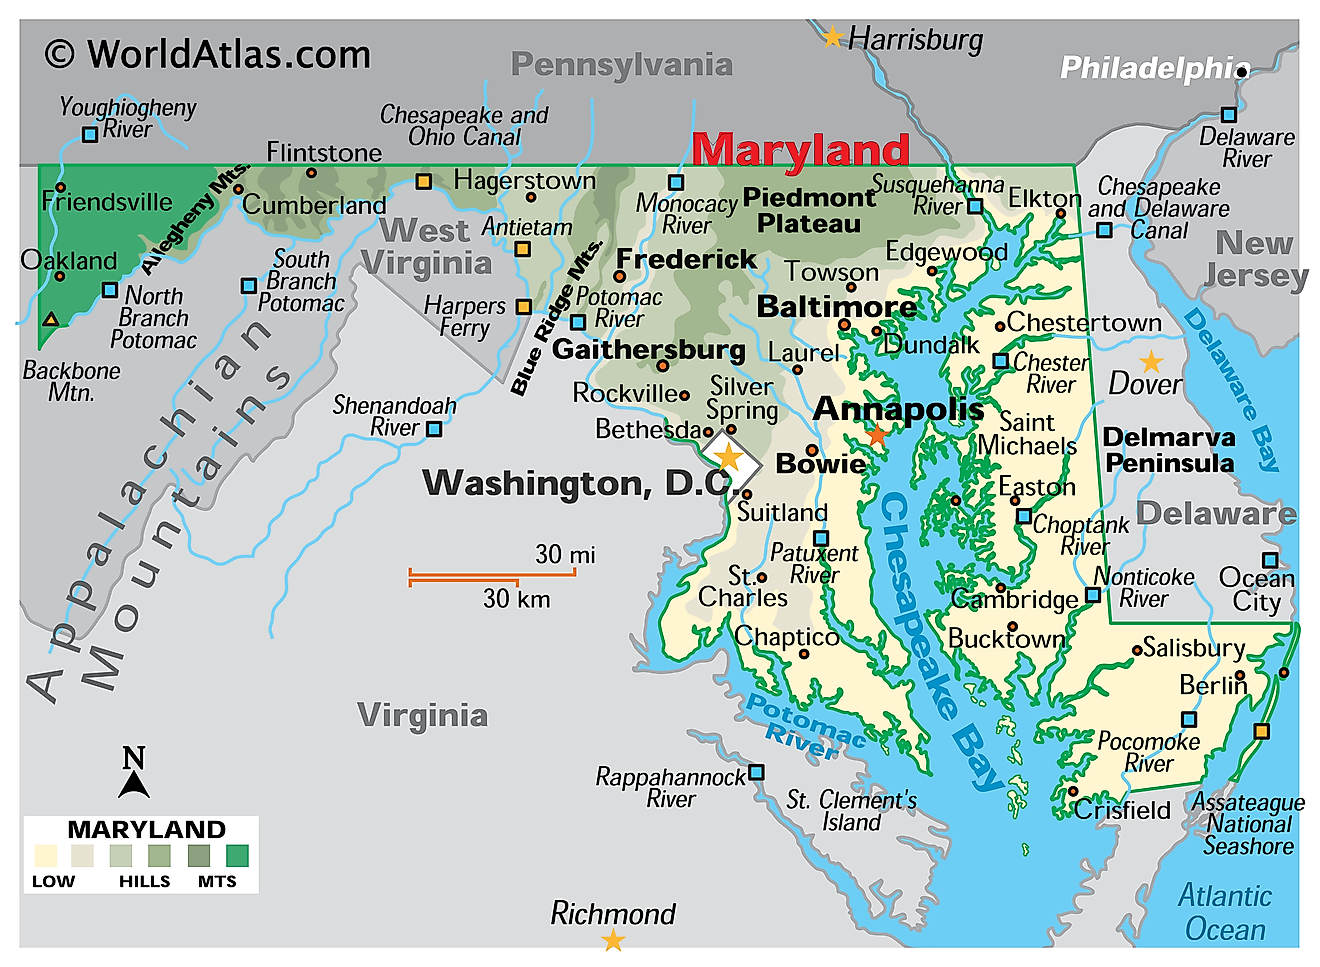 Mapa físico de Maryland. Muestra las características físicas de Maryland, incluidas sus cadenas montañosas, los principales ríos, la península de Delmarva y la bahía de Chesapeake.